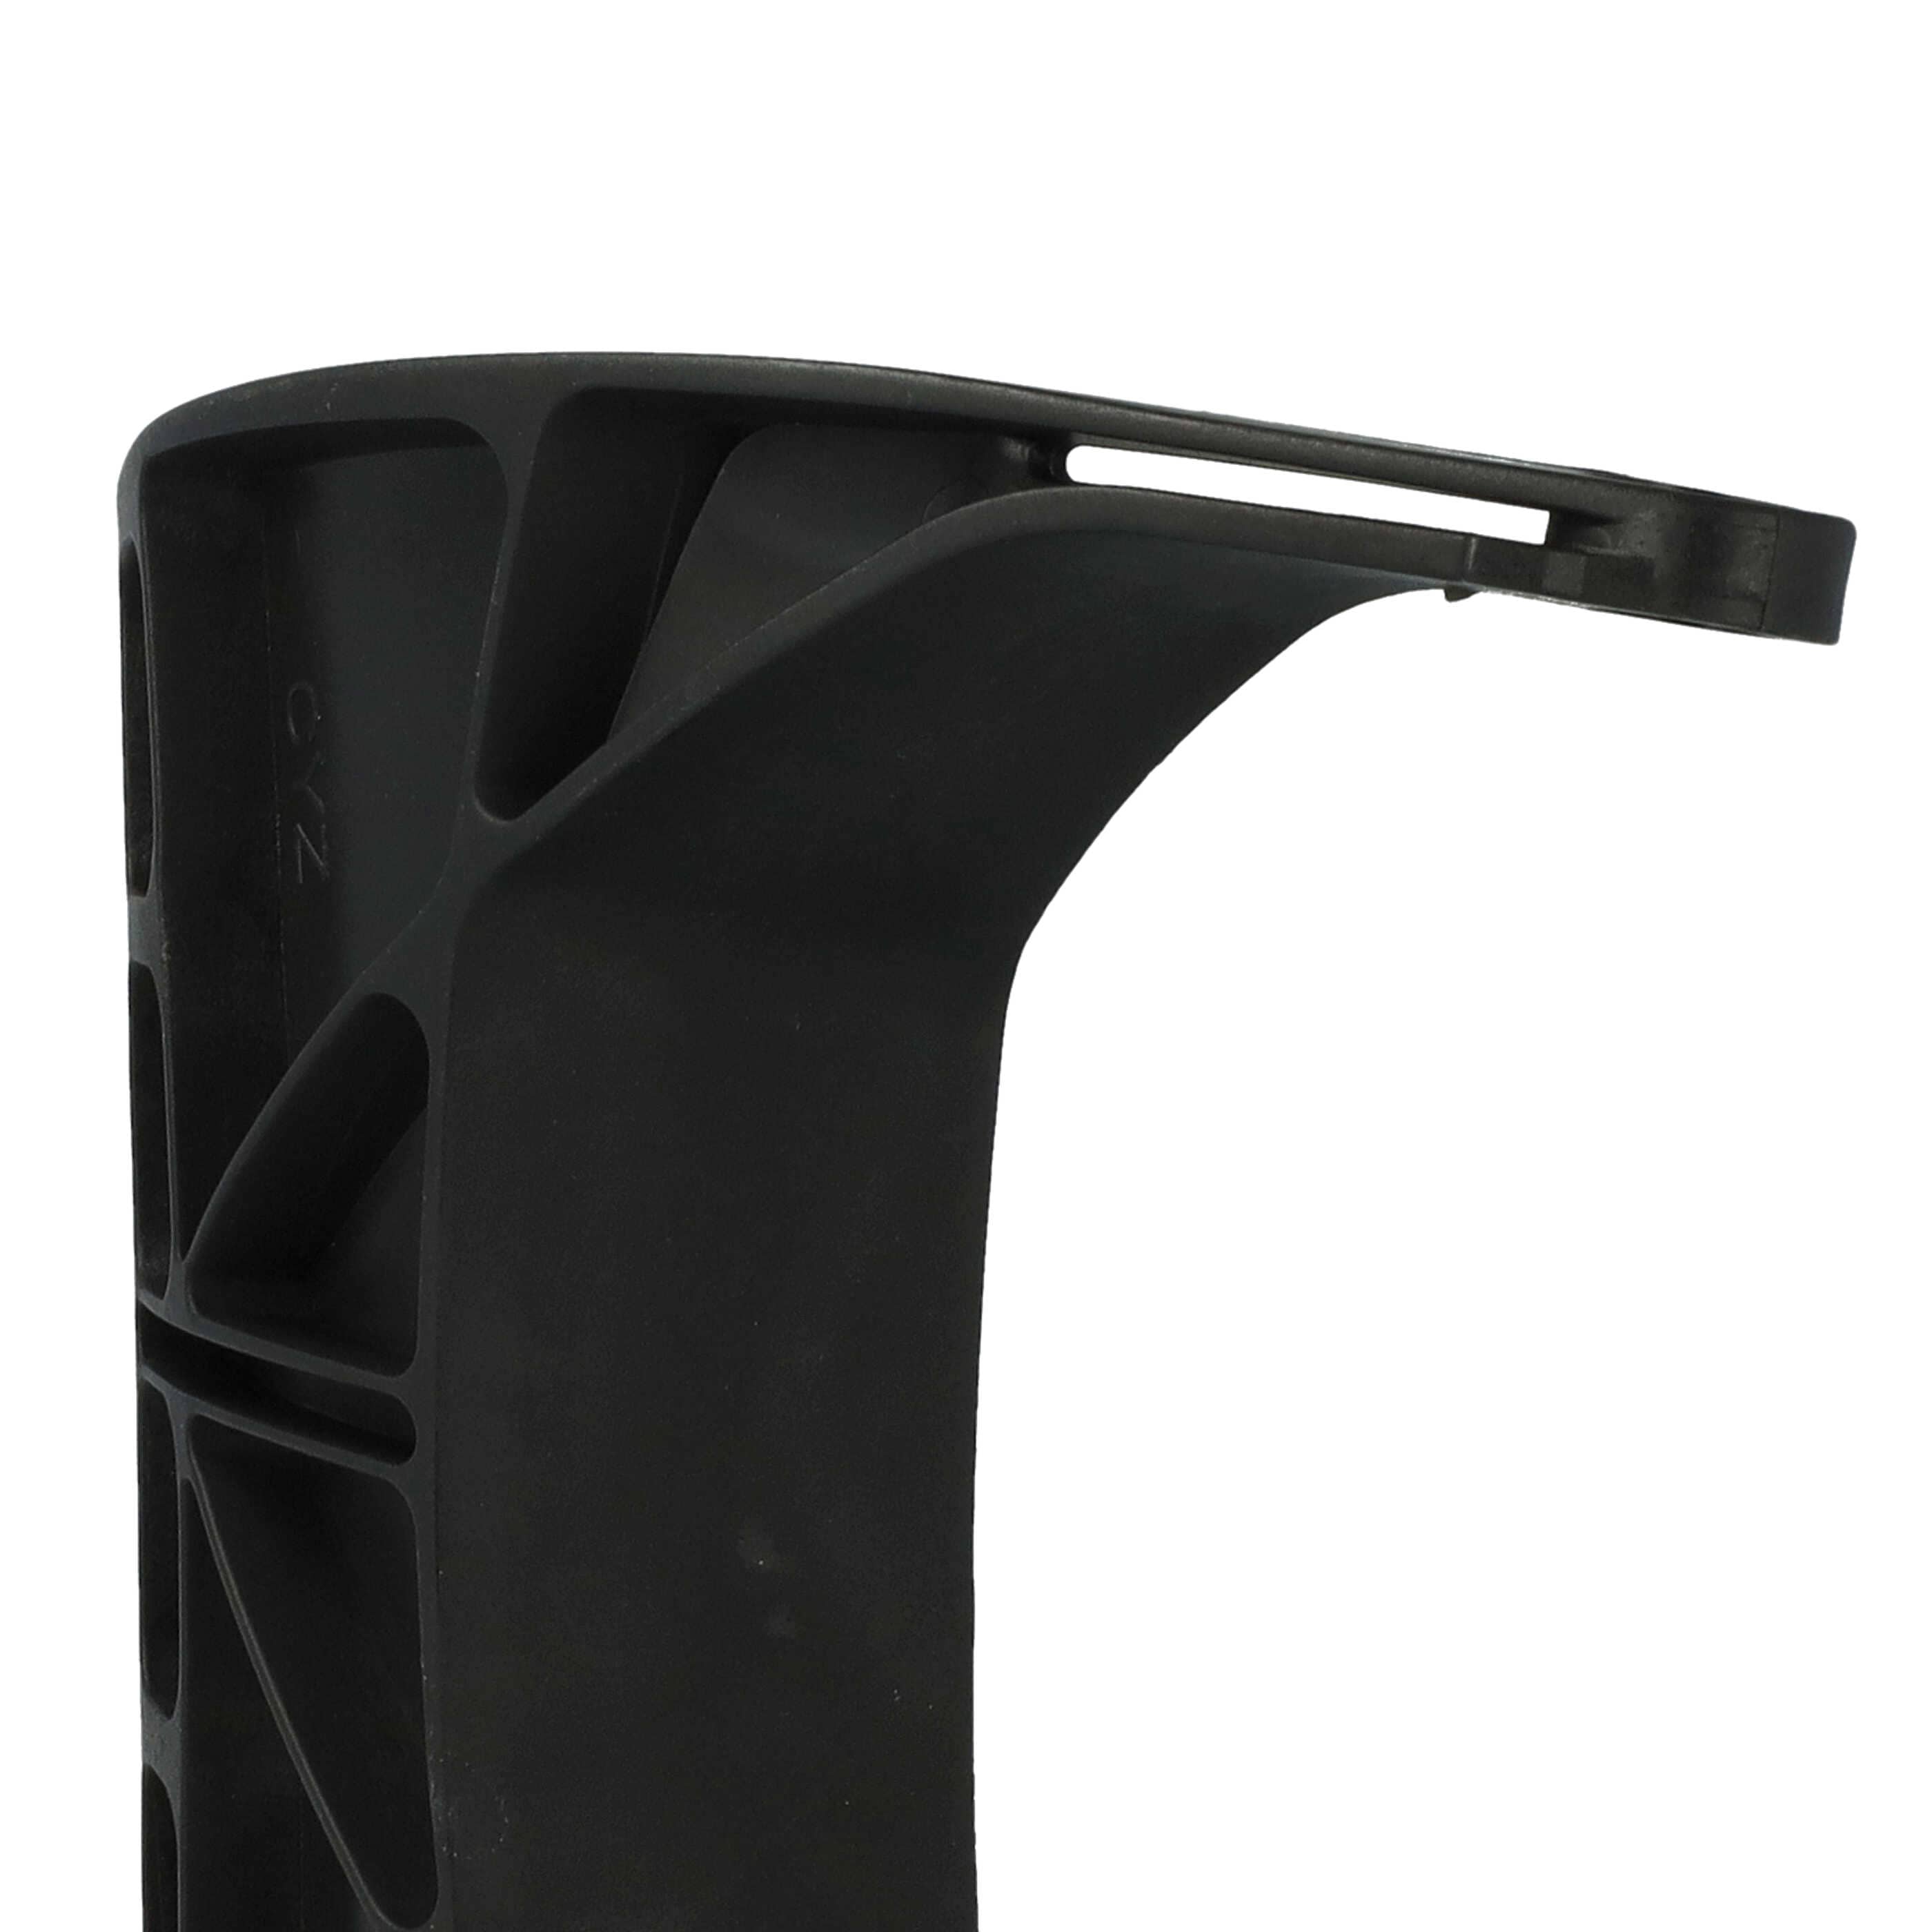 Protector de mano reemplaza Stihl 1143 792 9103 compatible con Stihl motosierra - 18,5 x 15,5 x 4 cm negro